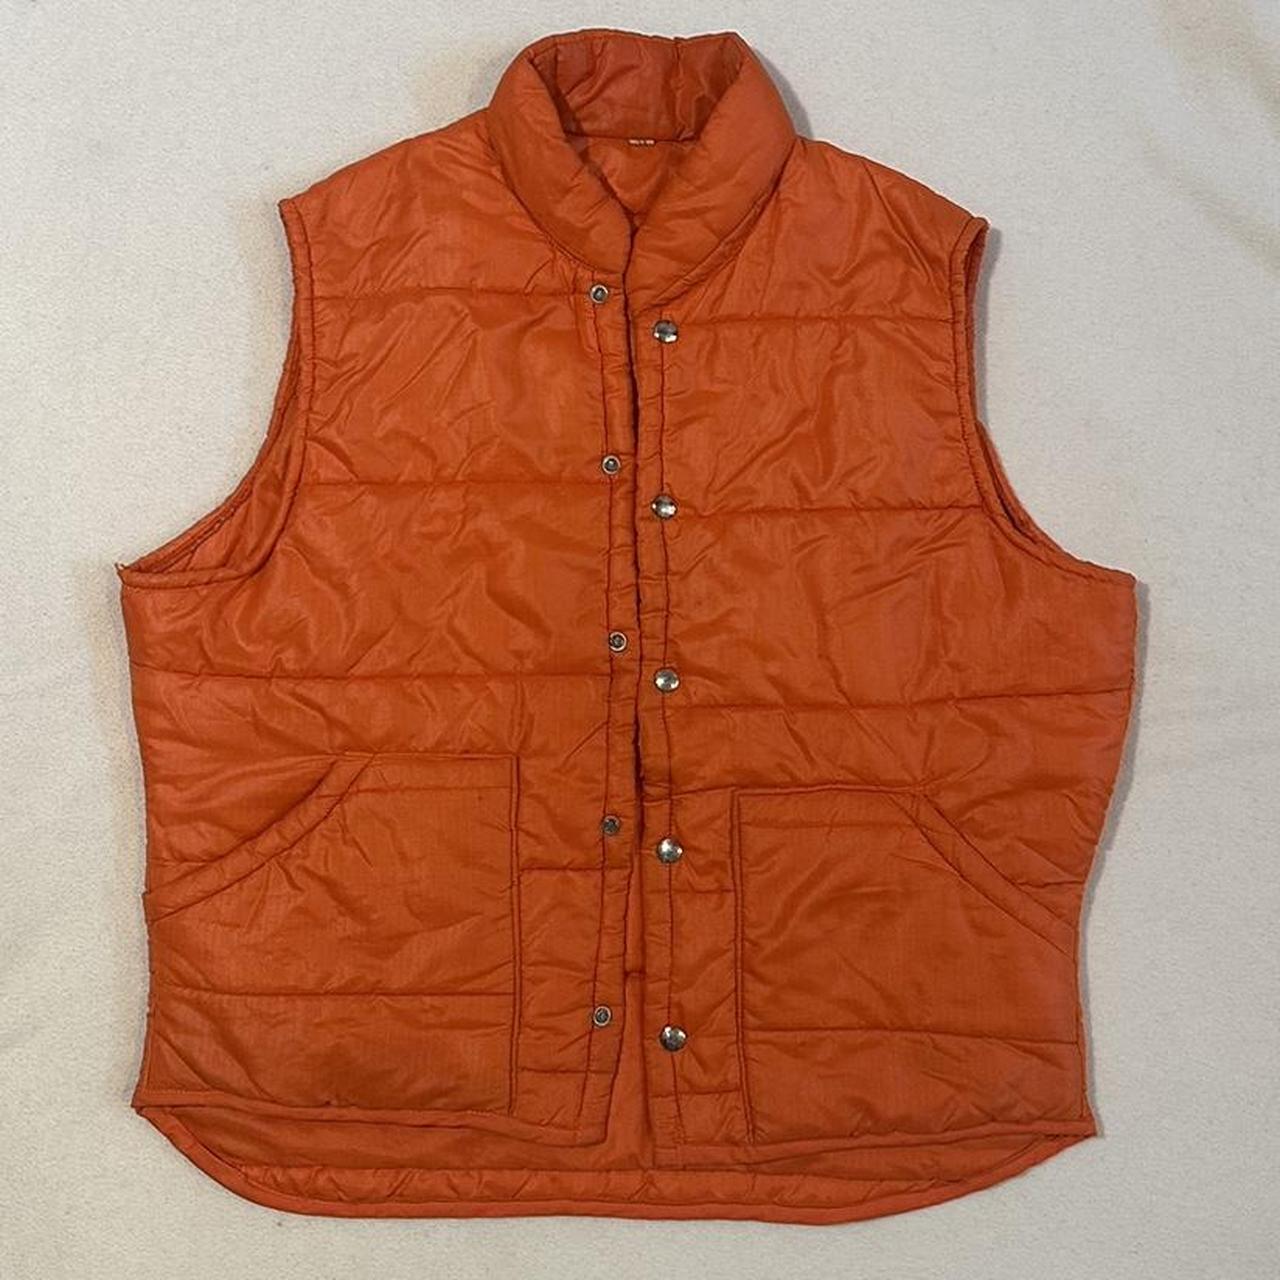 Vintage orange vest button up Buttons & pockets... - Depop